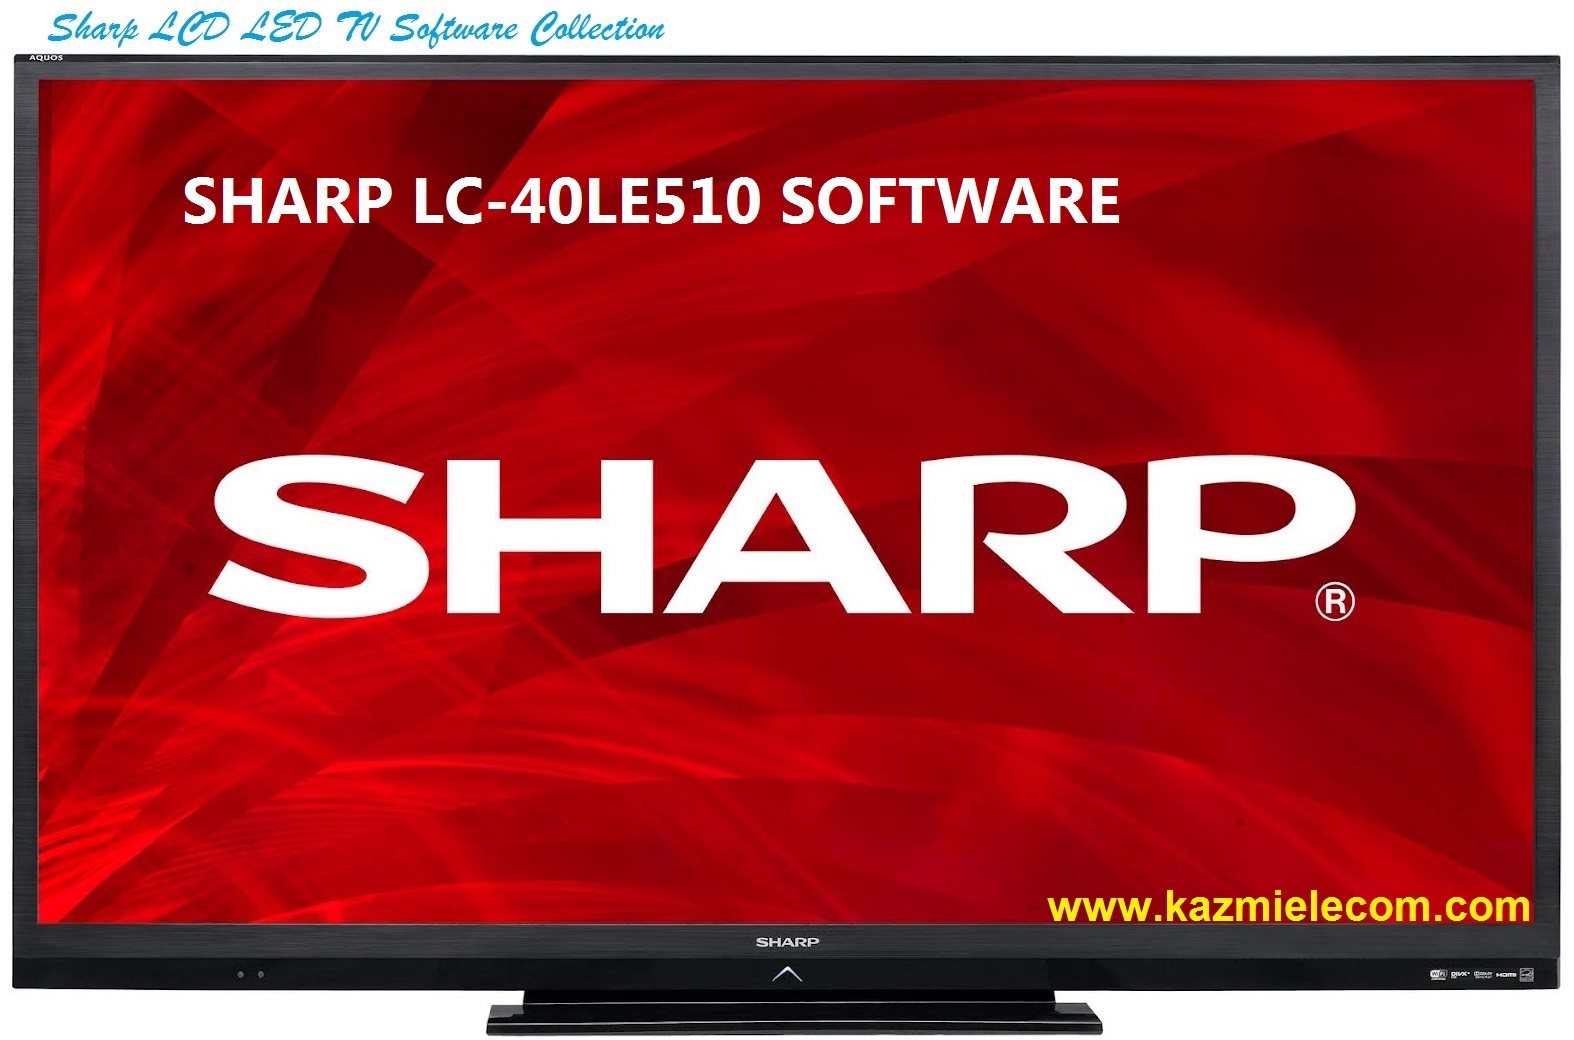 Sharp Lc-40Le510